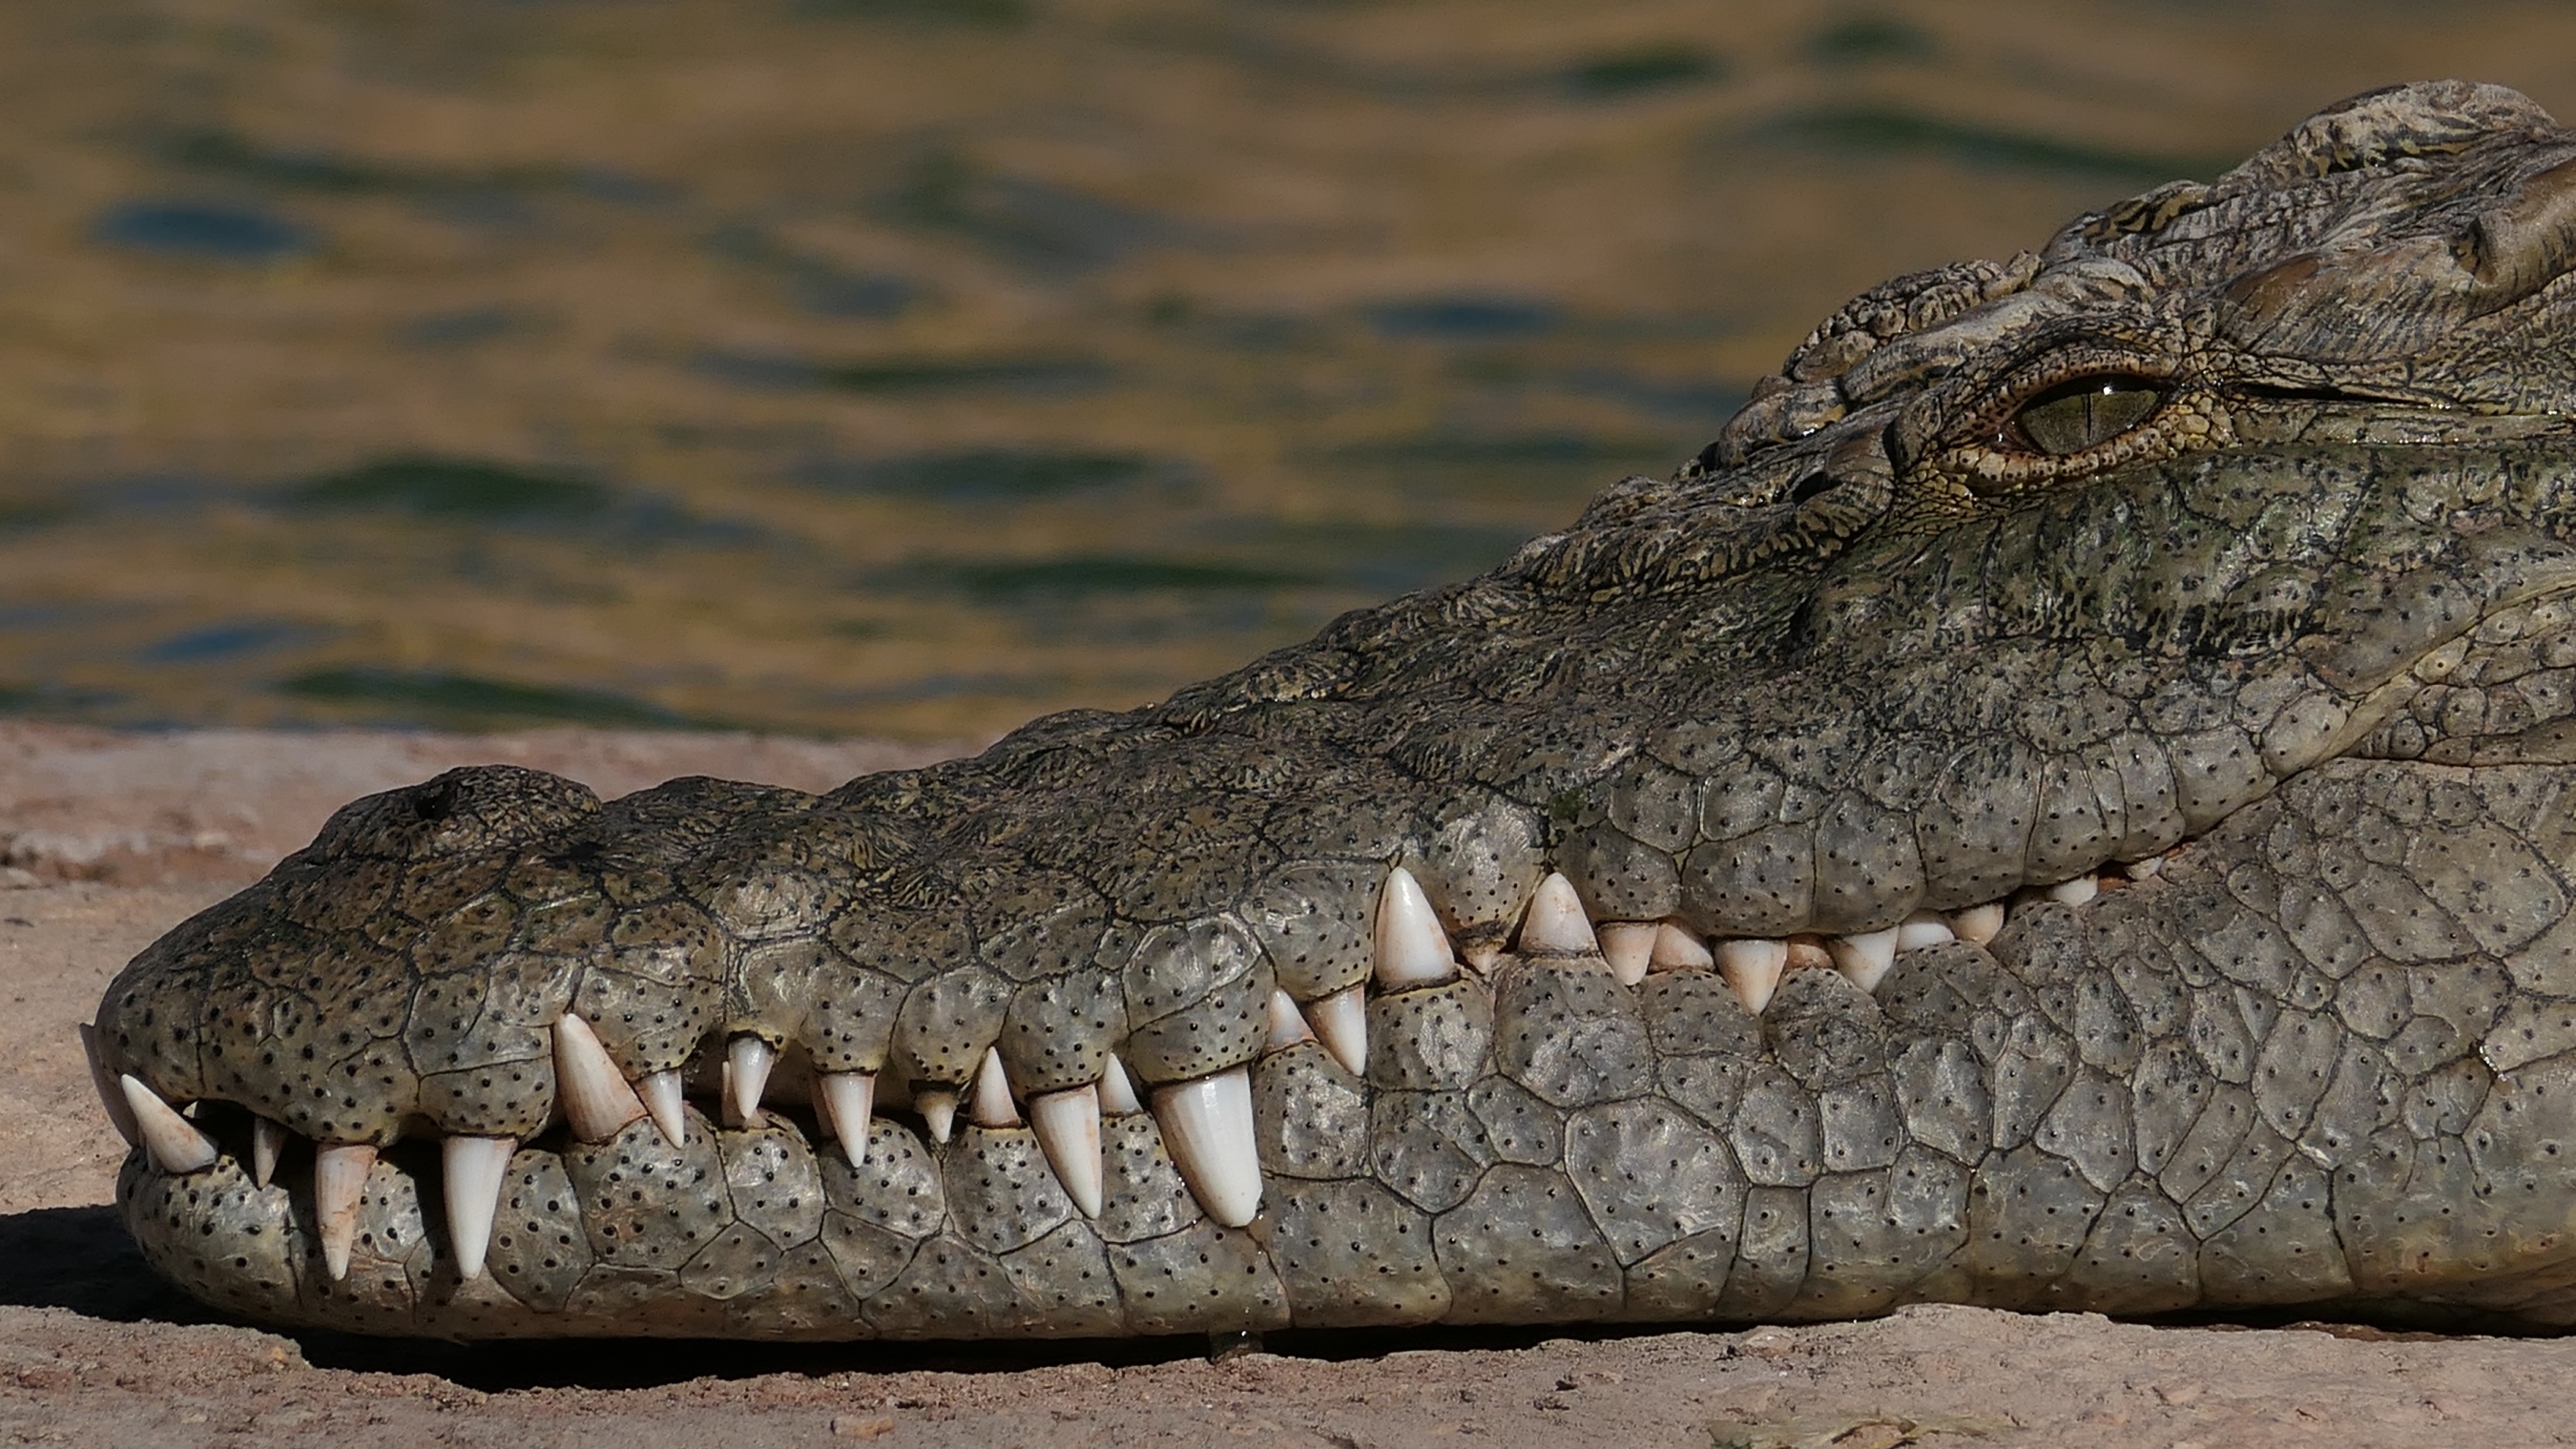 Nile Crocodile up close